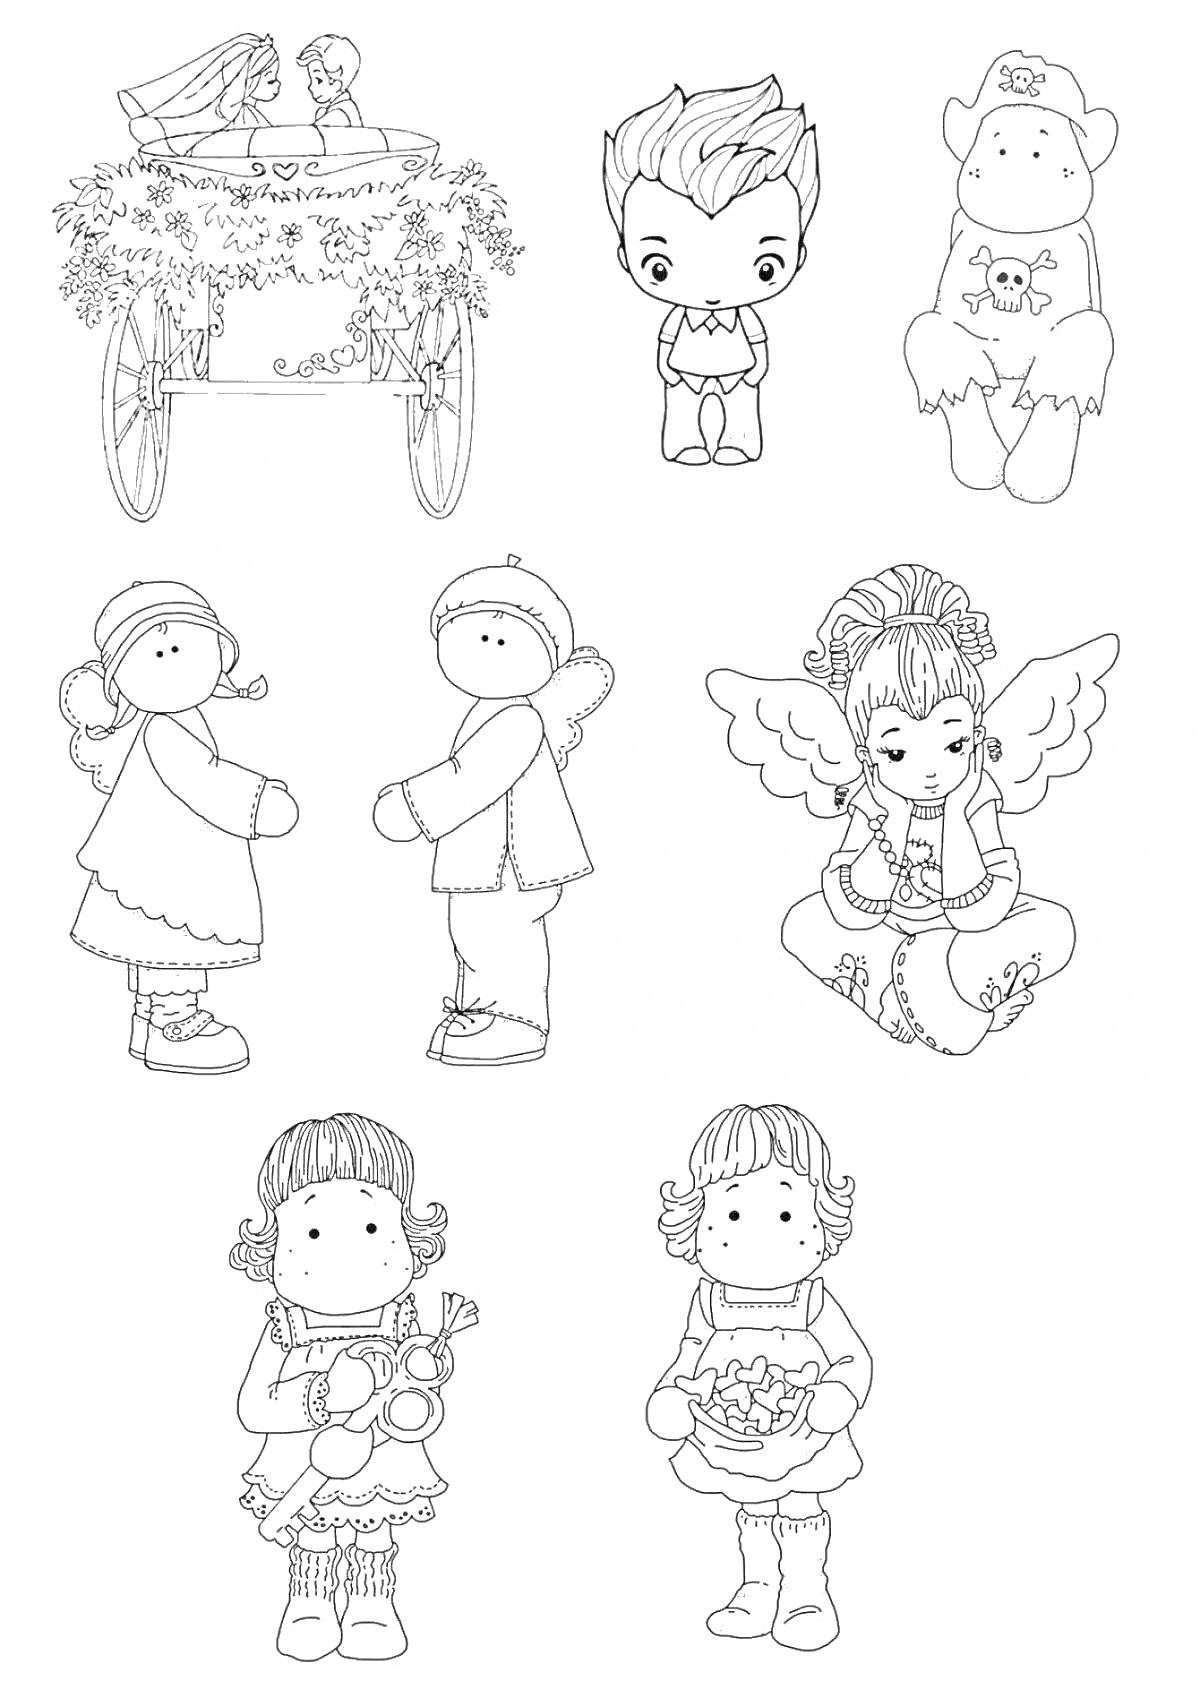 Раскраска Раскраска с изображением телеги, мальчика с прической, медвежонка, двух детей, ангела, девочки с куклой и девочки с цветами.